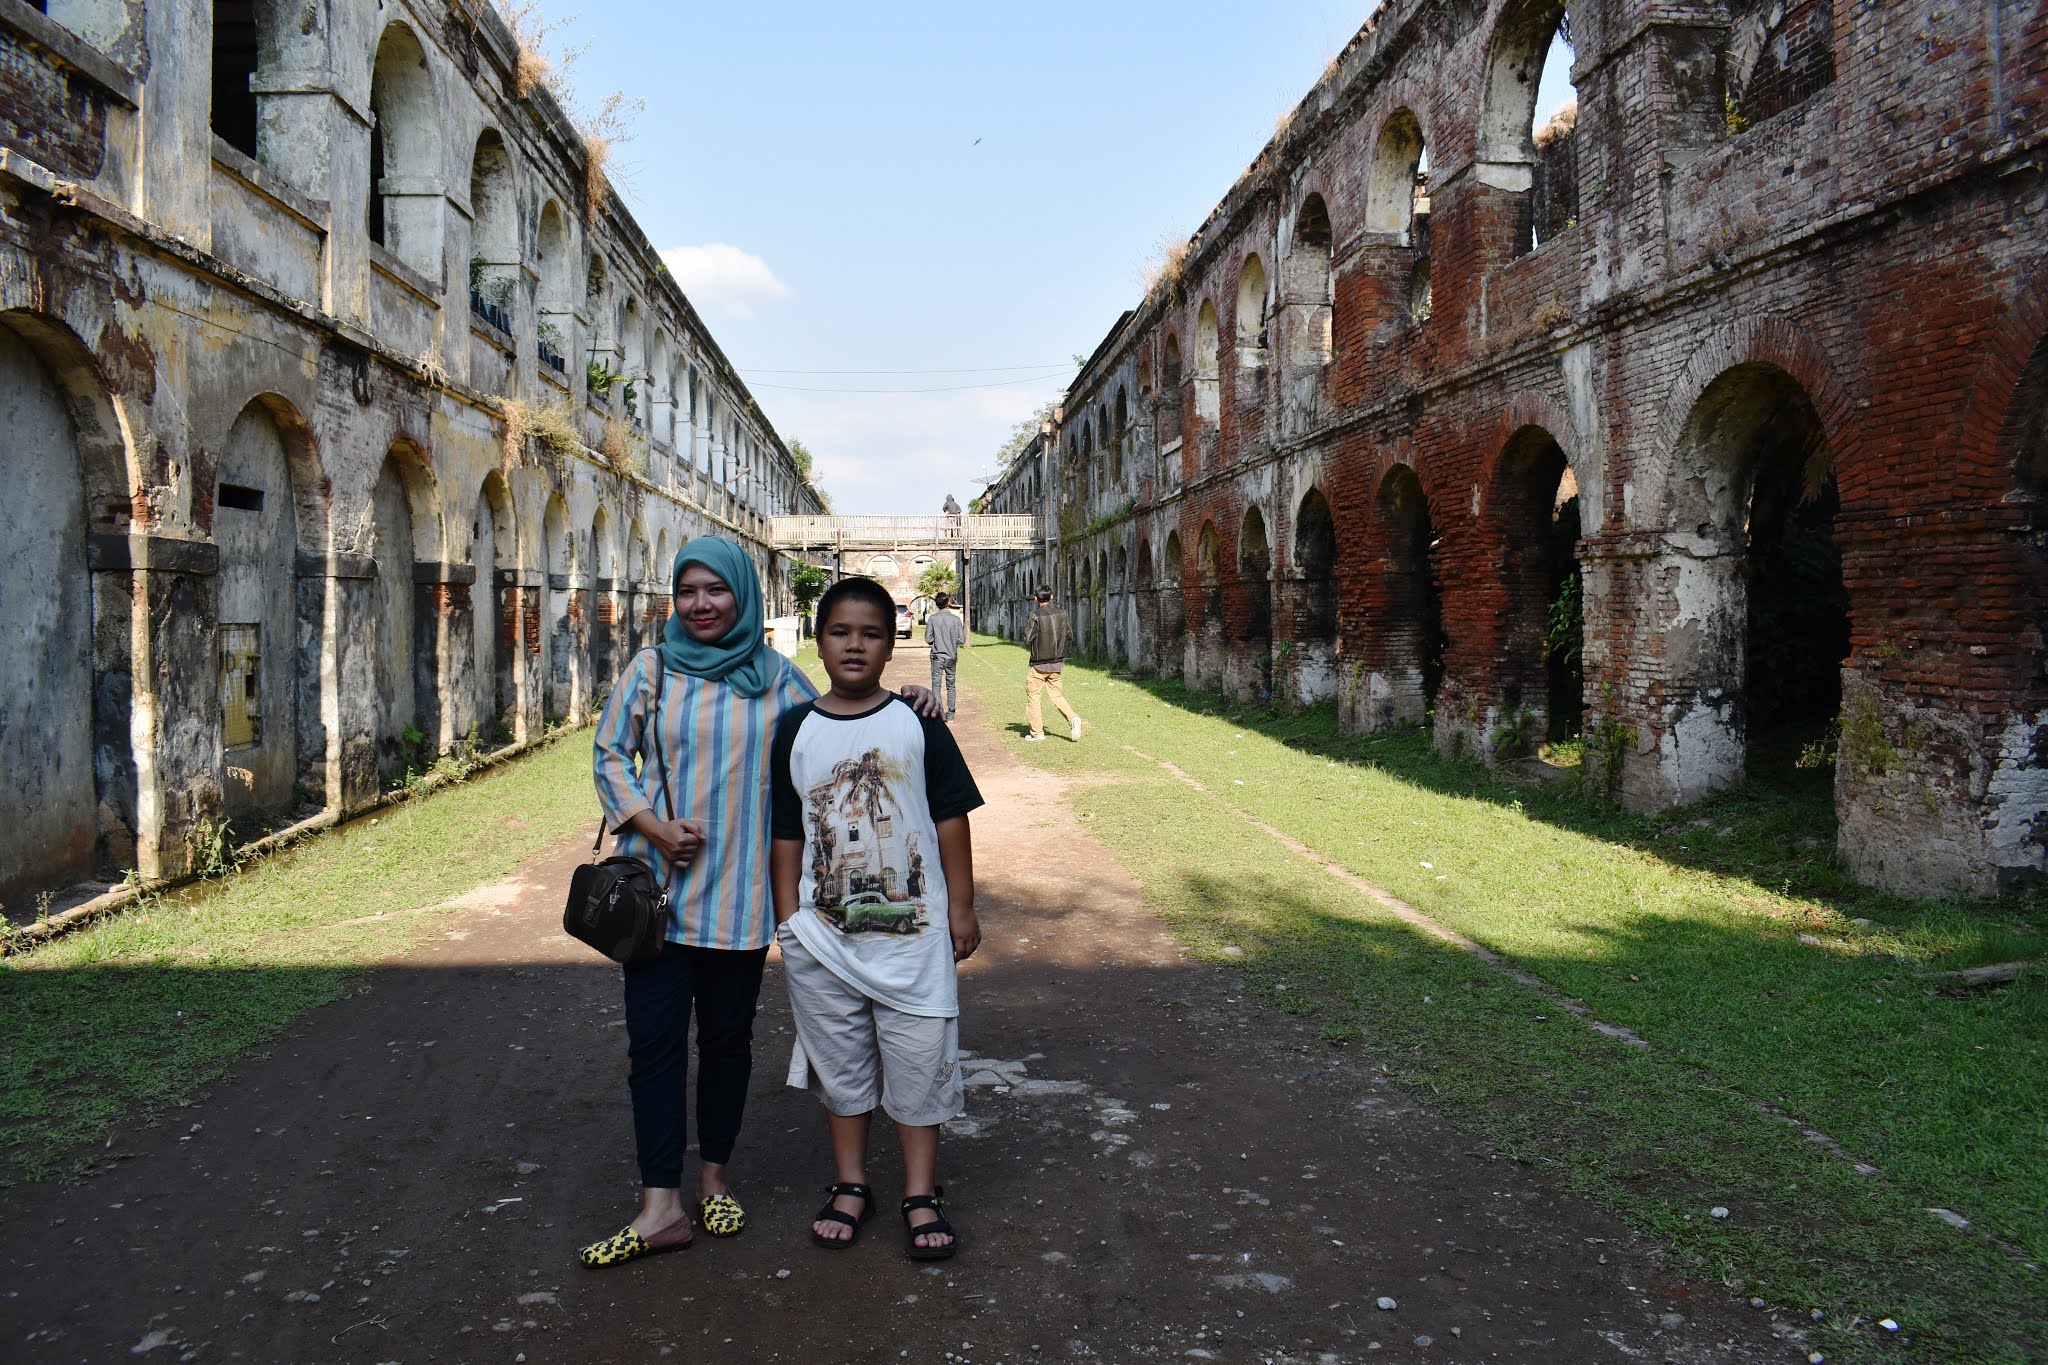 wisata sejarah benteng fort willem pendhem ambarawa semarang jawa tengah nurulsufitri mom lifestyle blogger traveling